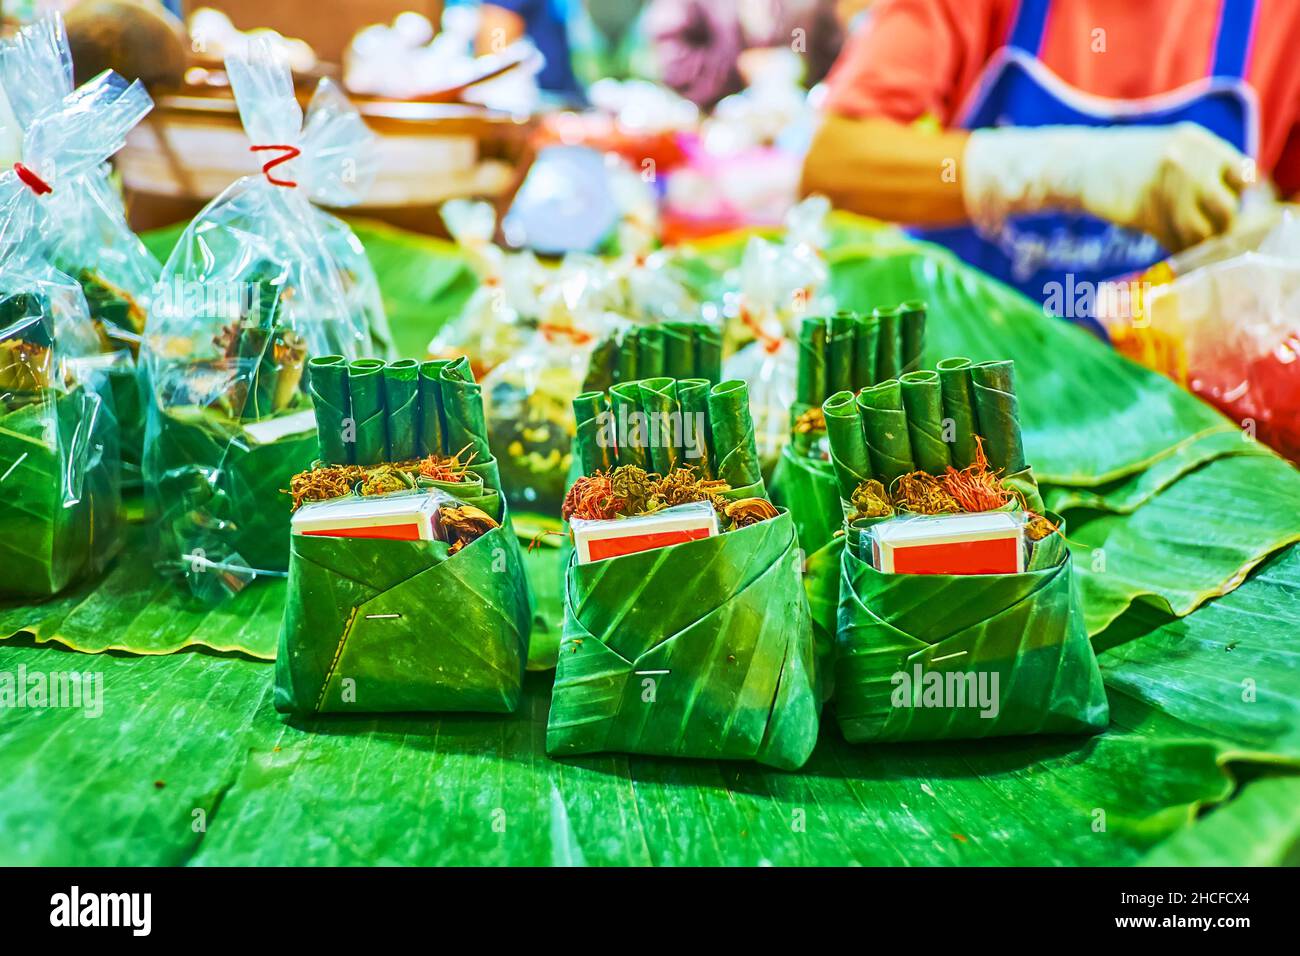 Il set per fumatori - una scatola e sigari di cheroot fatti a mano di foglie di banana con una scatola di partite, Gate Market, Chiang mai, Thailandia Foto Stock